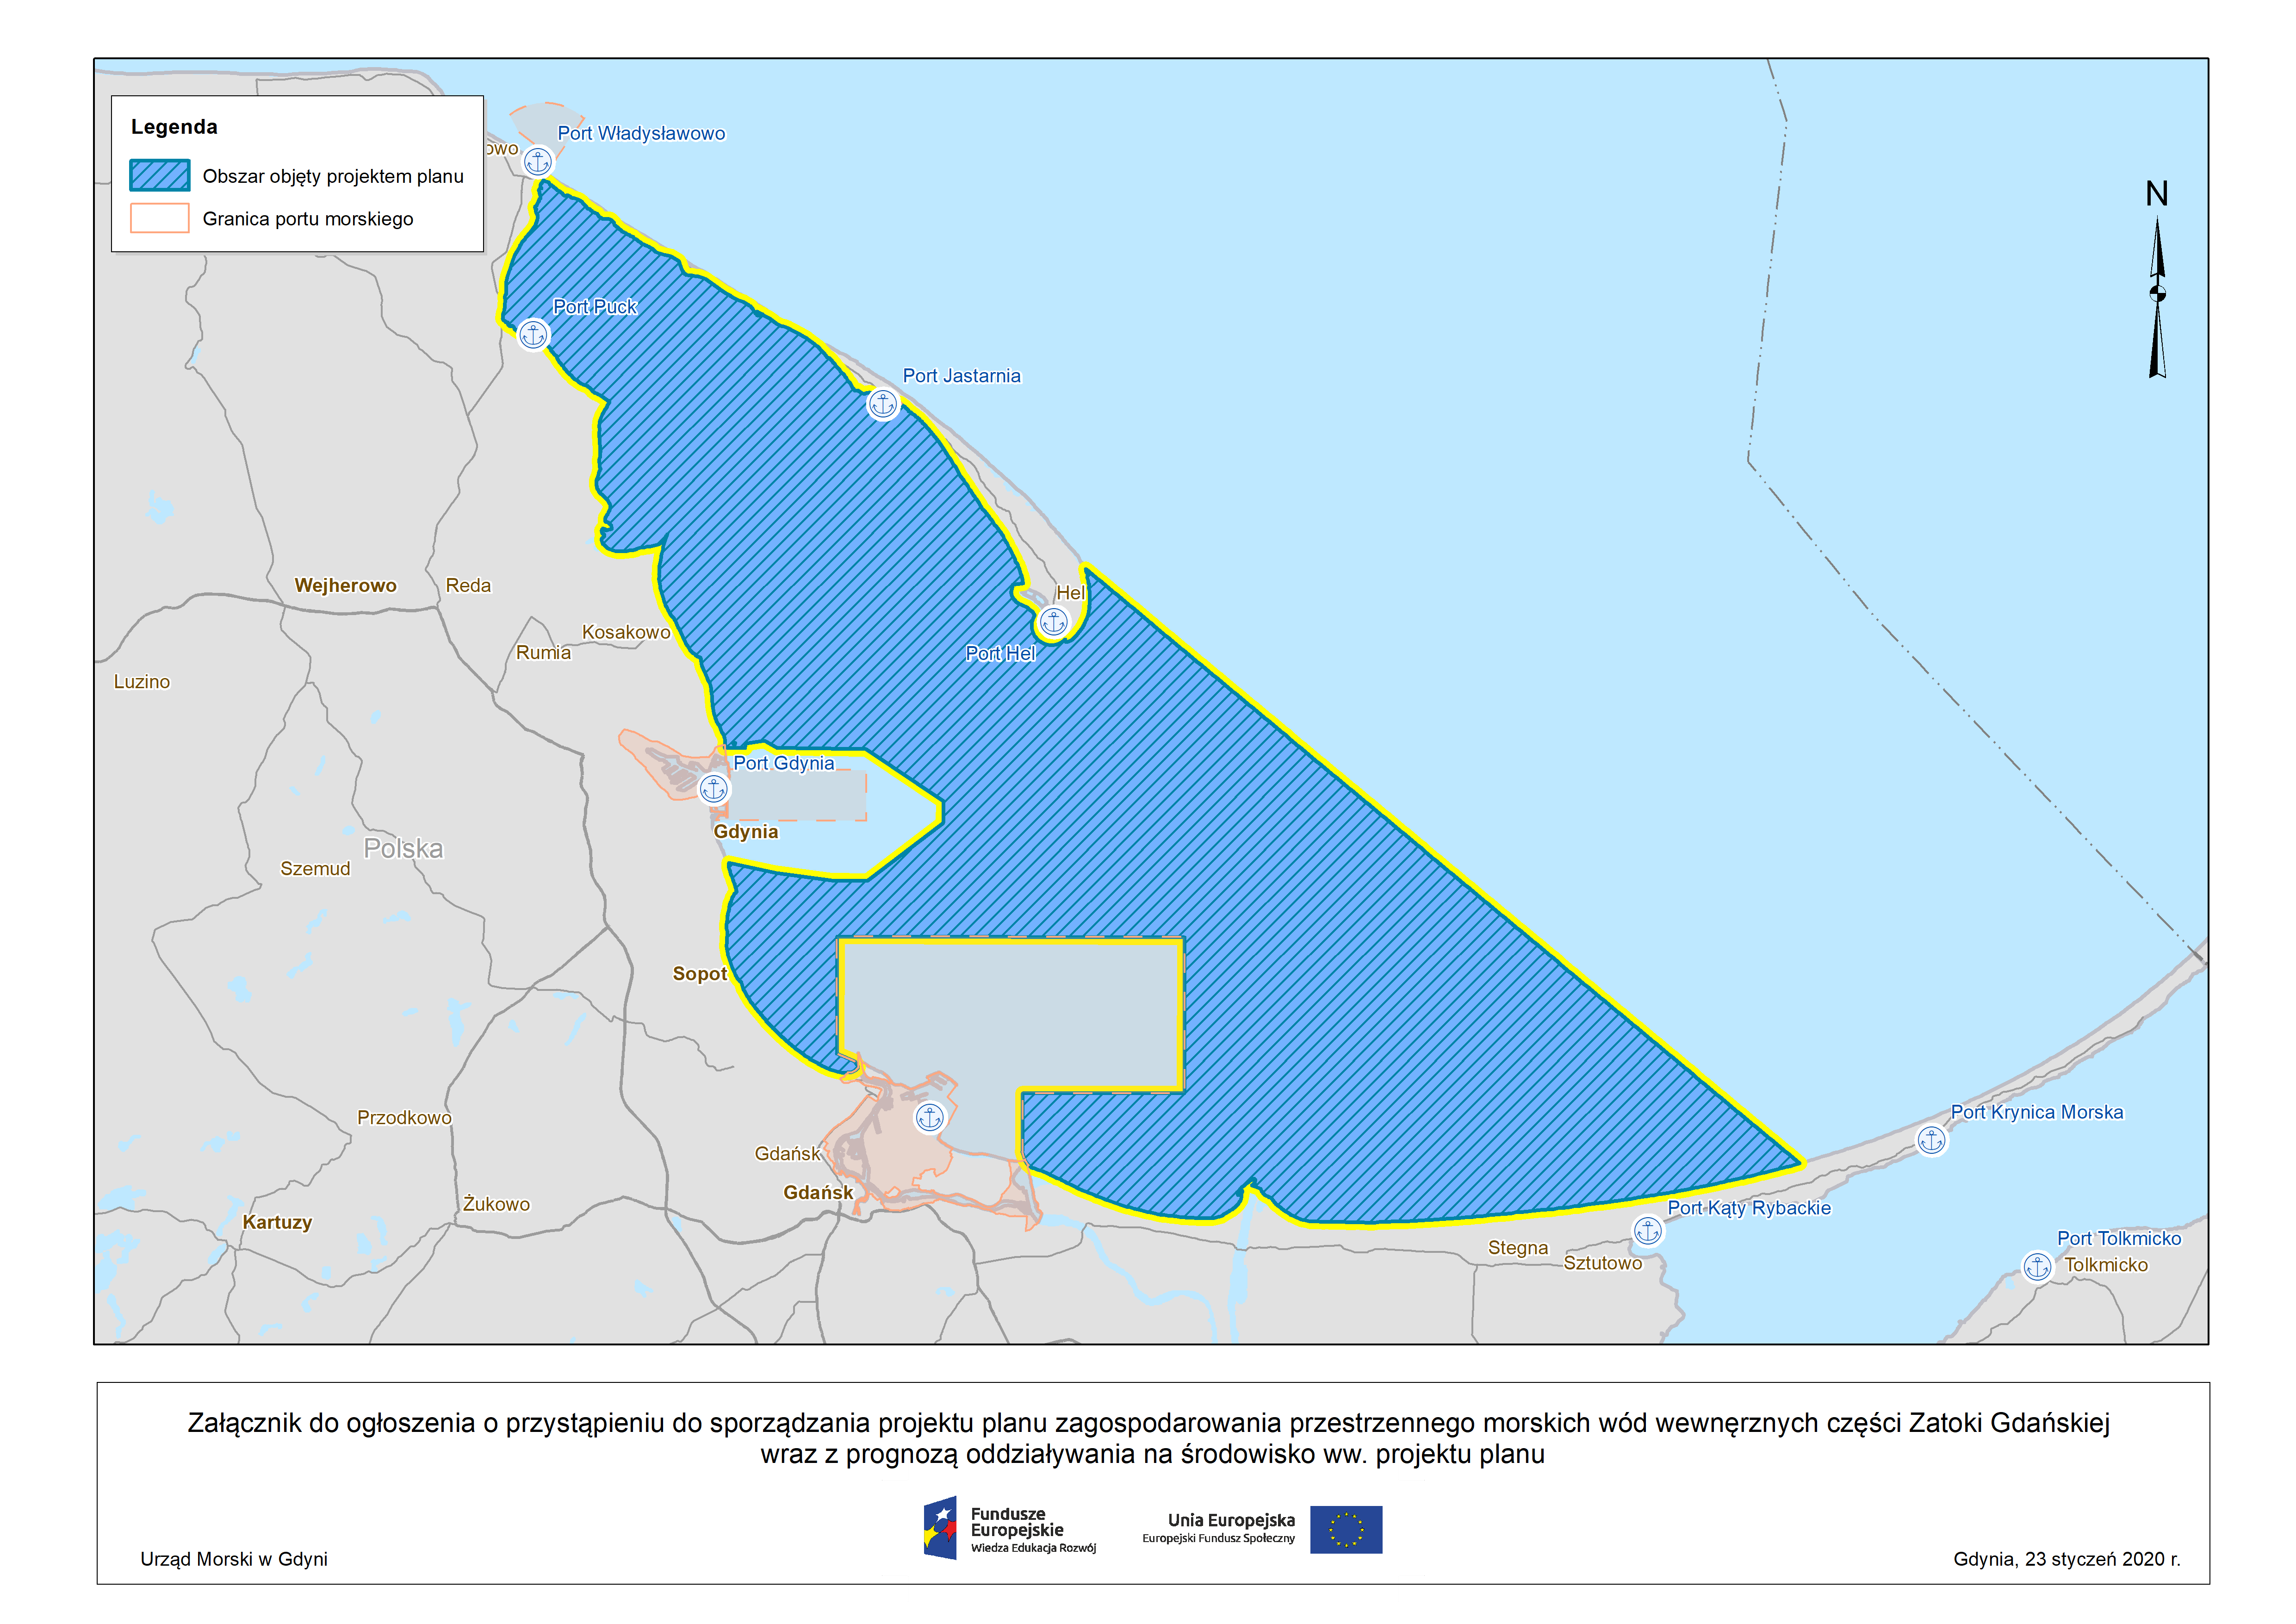 Ogłoszenie o przystąpieniu do sporządzania projektu planu zagospodarowania przestrzennego morskich wód wewnętrznych części Zatoki Gdańskiej